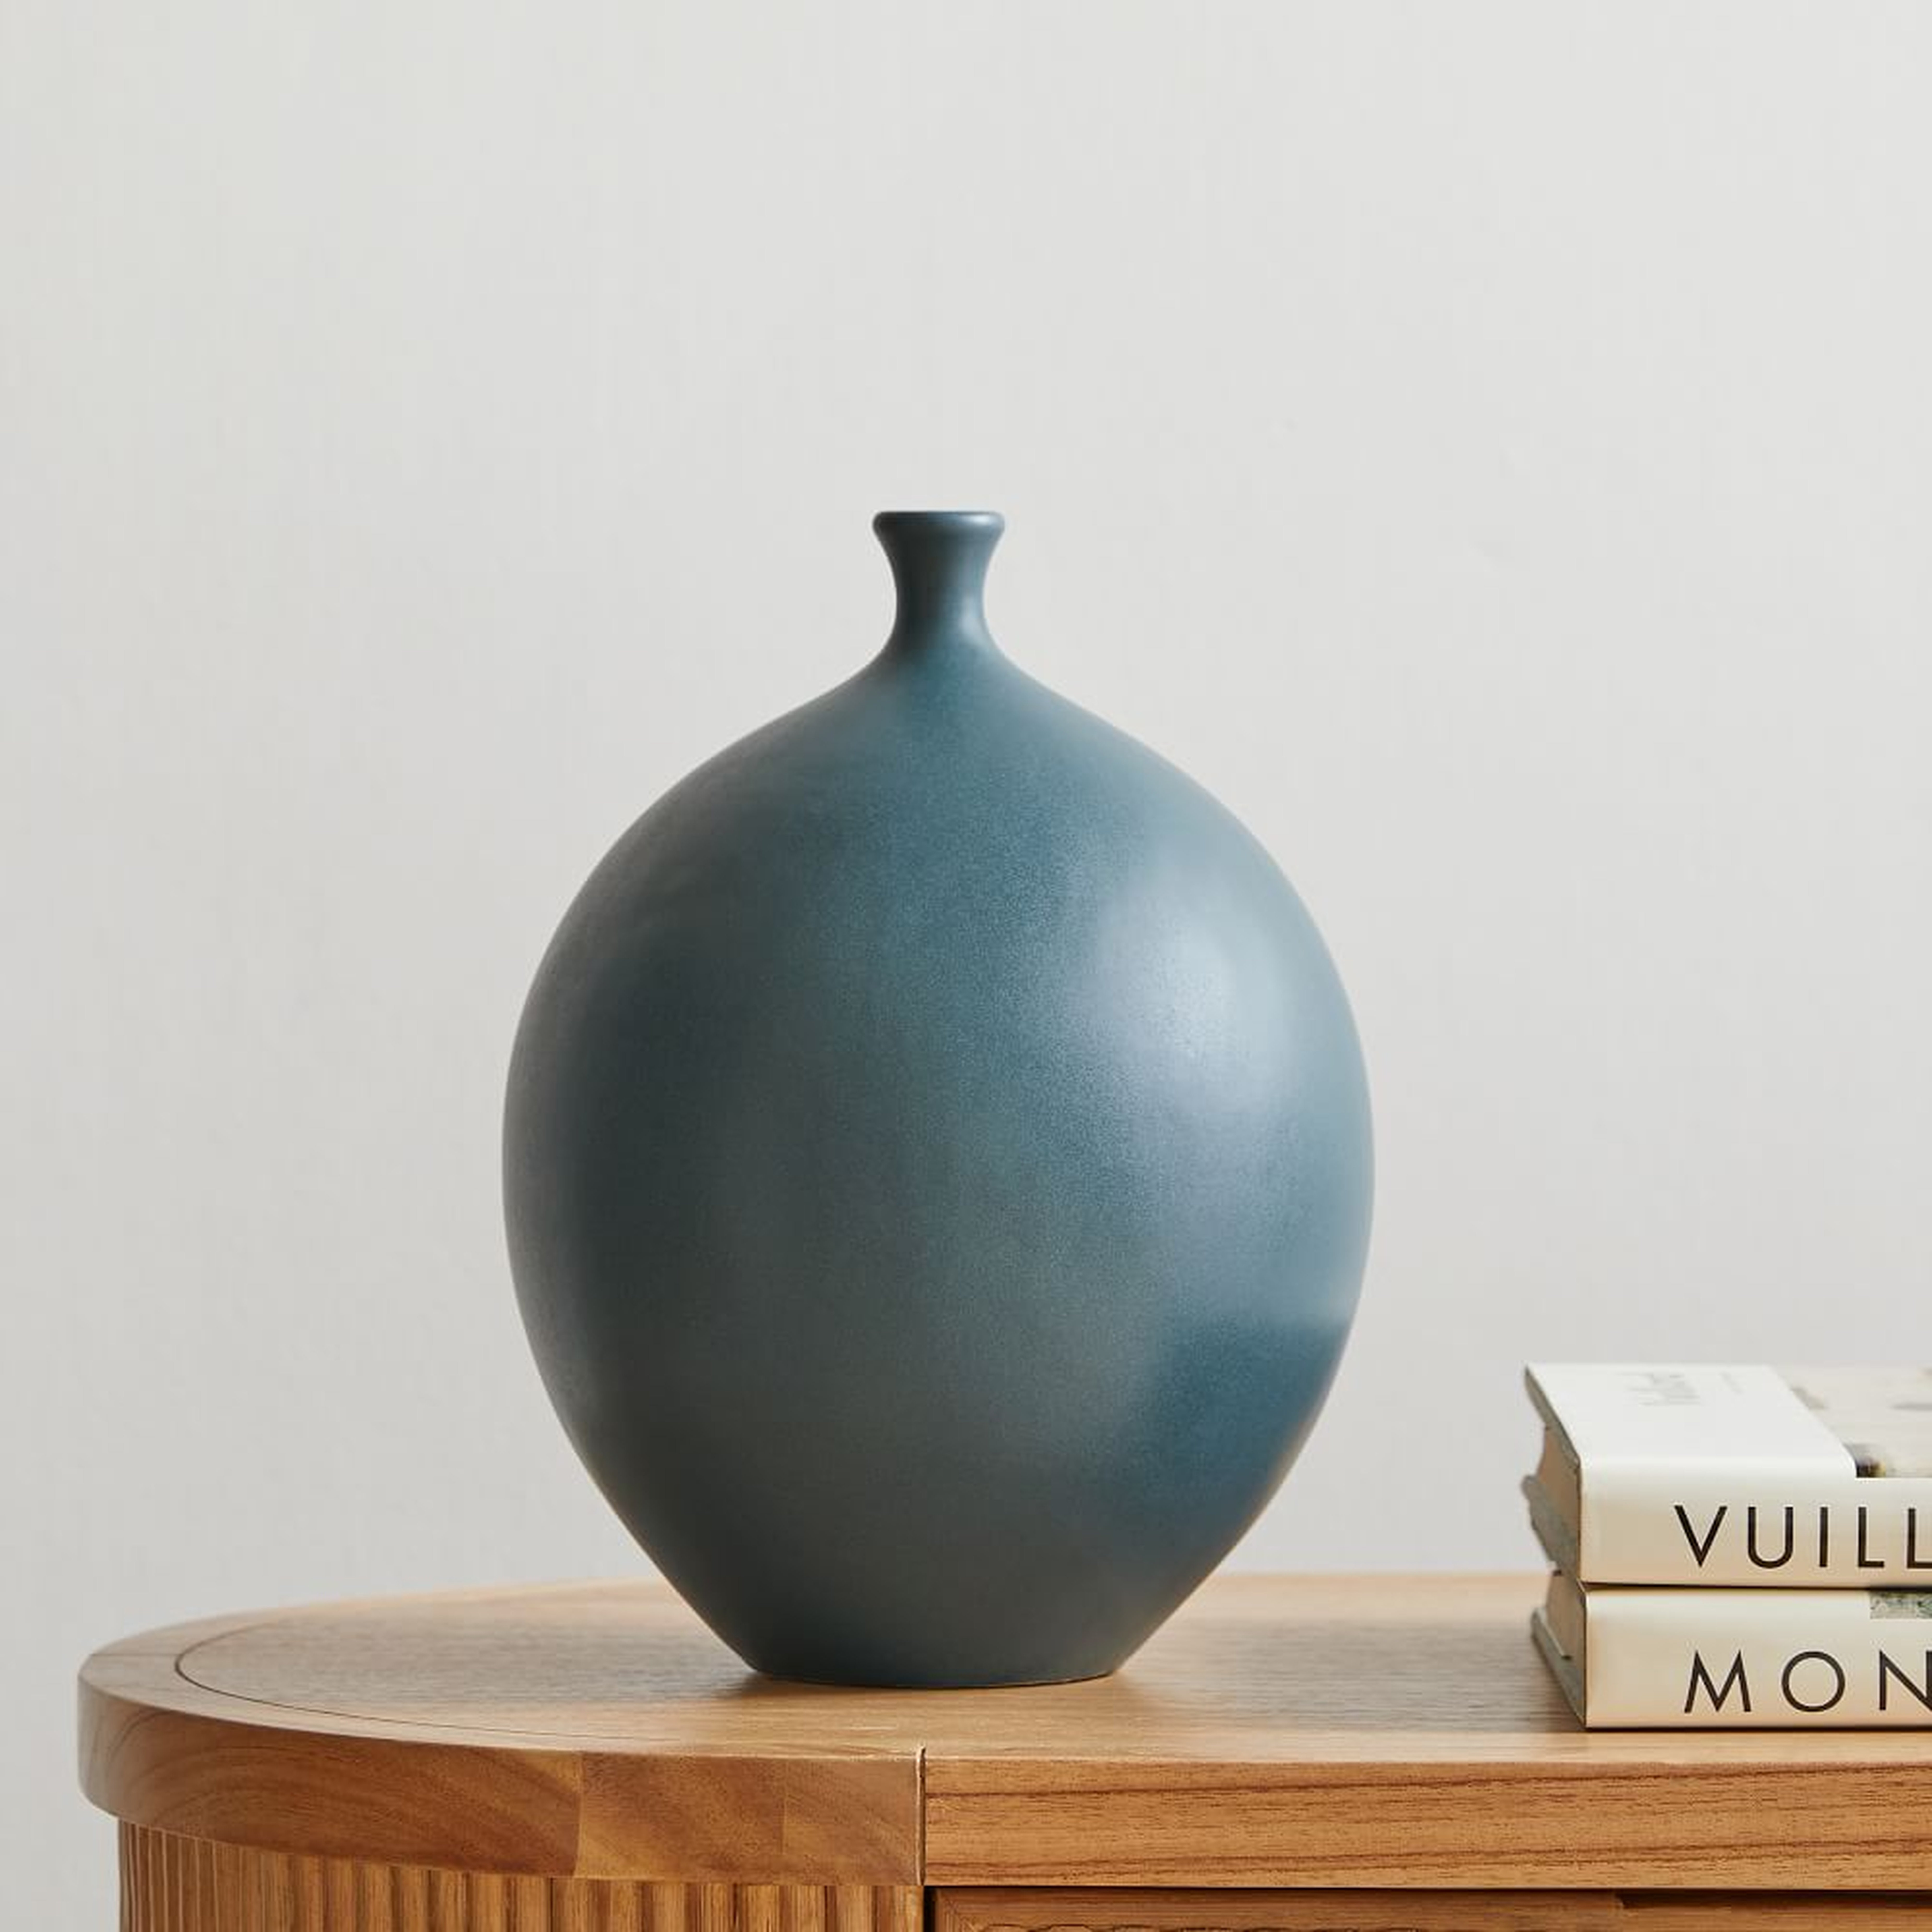 Crackle Glaze Vases, Round, Ocean, Ceramic, Medium - West Elm